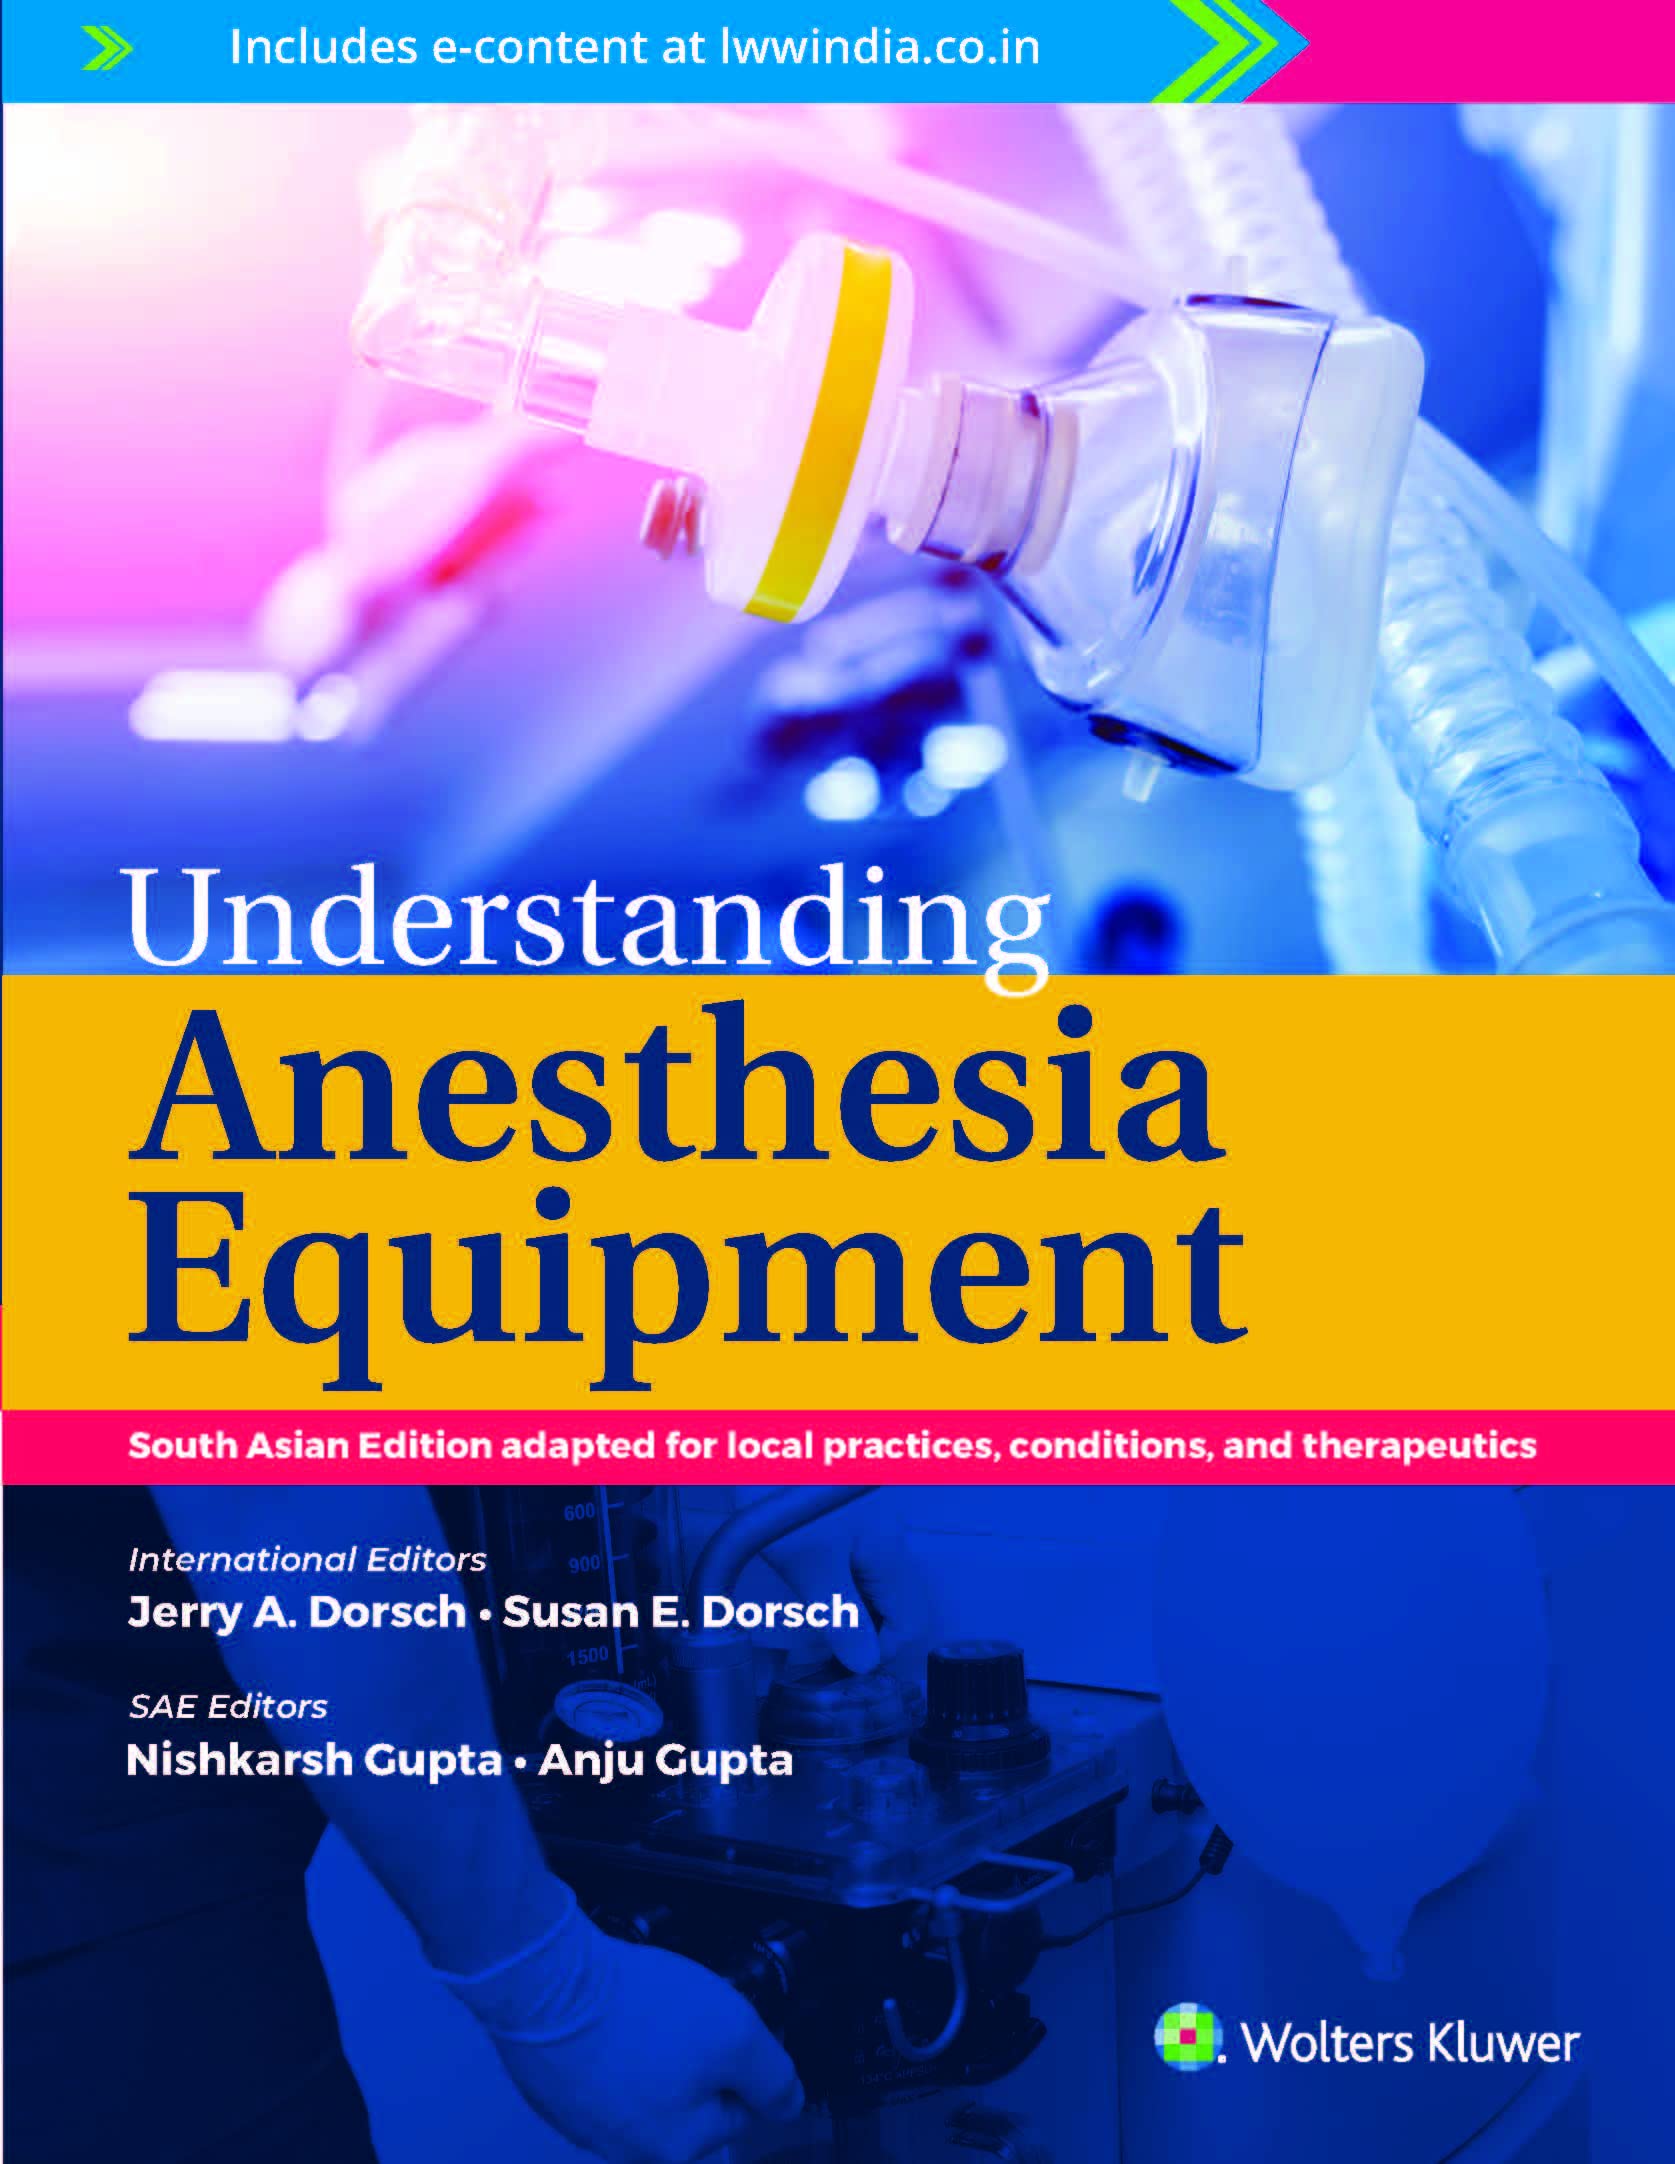 Understanding anesthesia equipment (Dorsch)